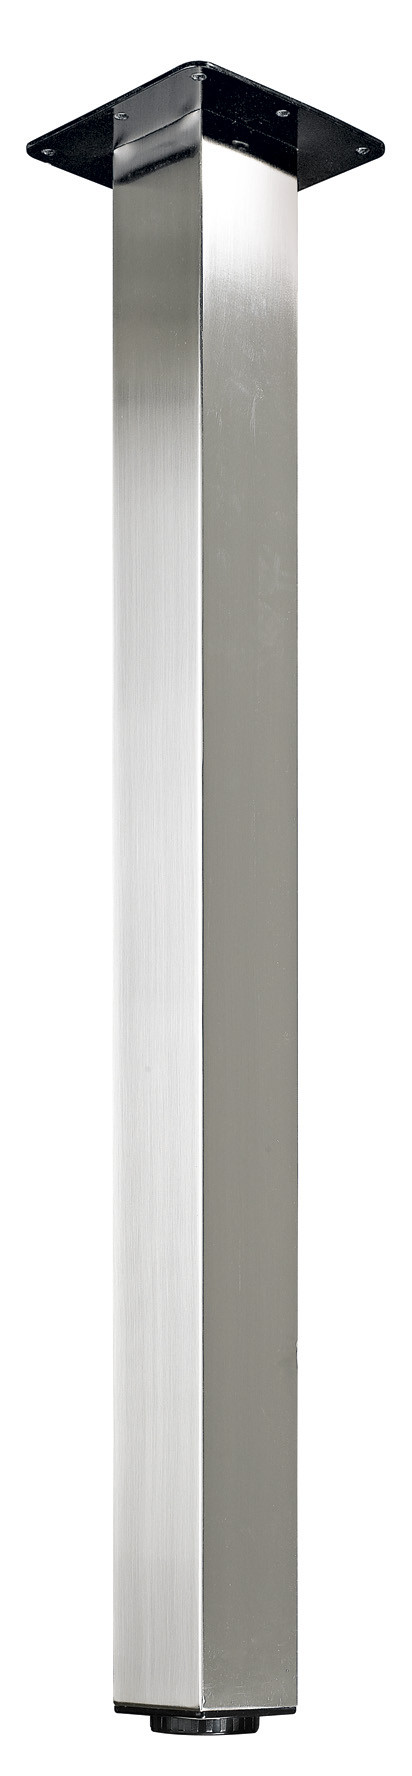 Pied de table carré réglable acier brossé gris, de 70 à 73 cm